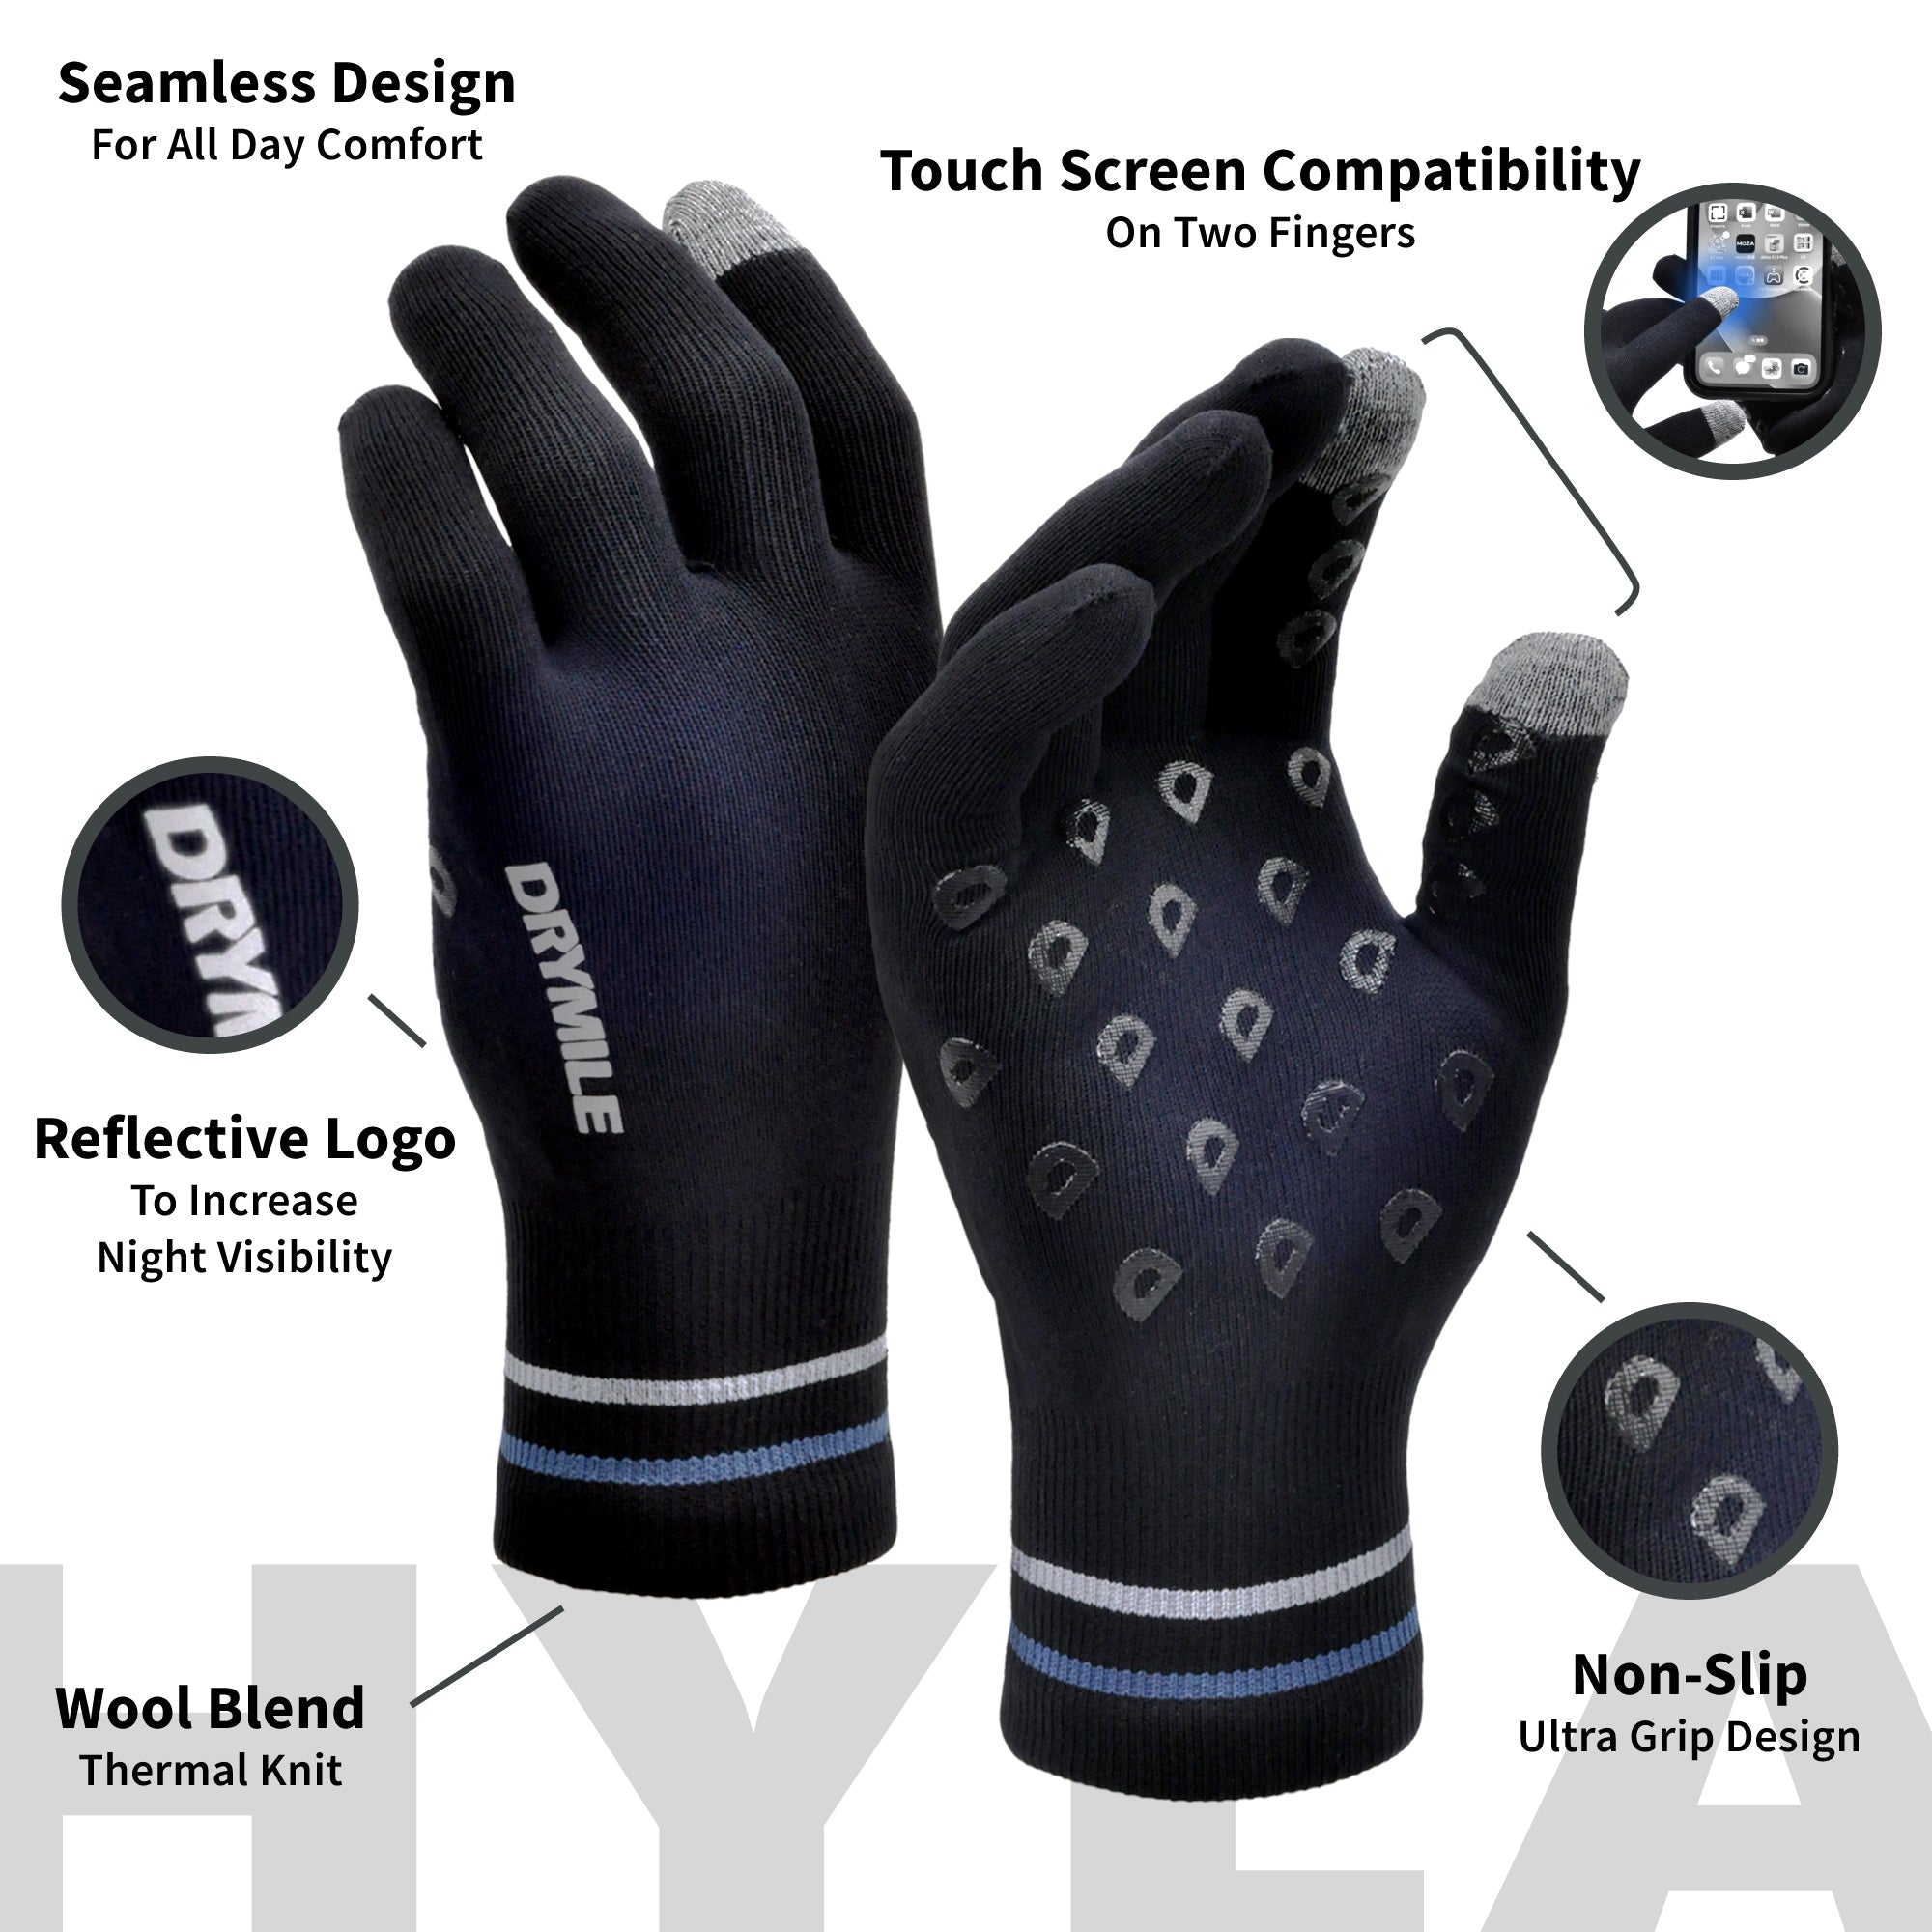 NEW! HYLA Waterproof Gloves